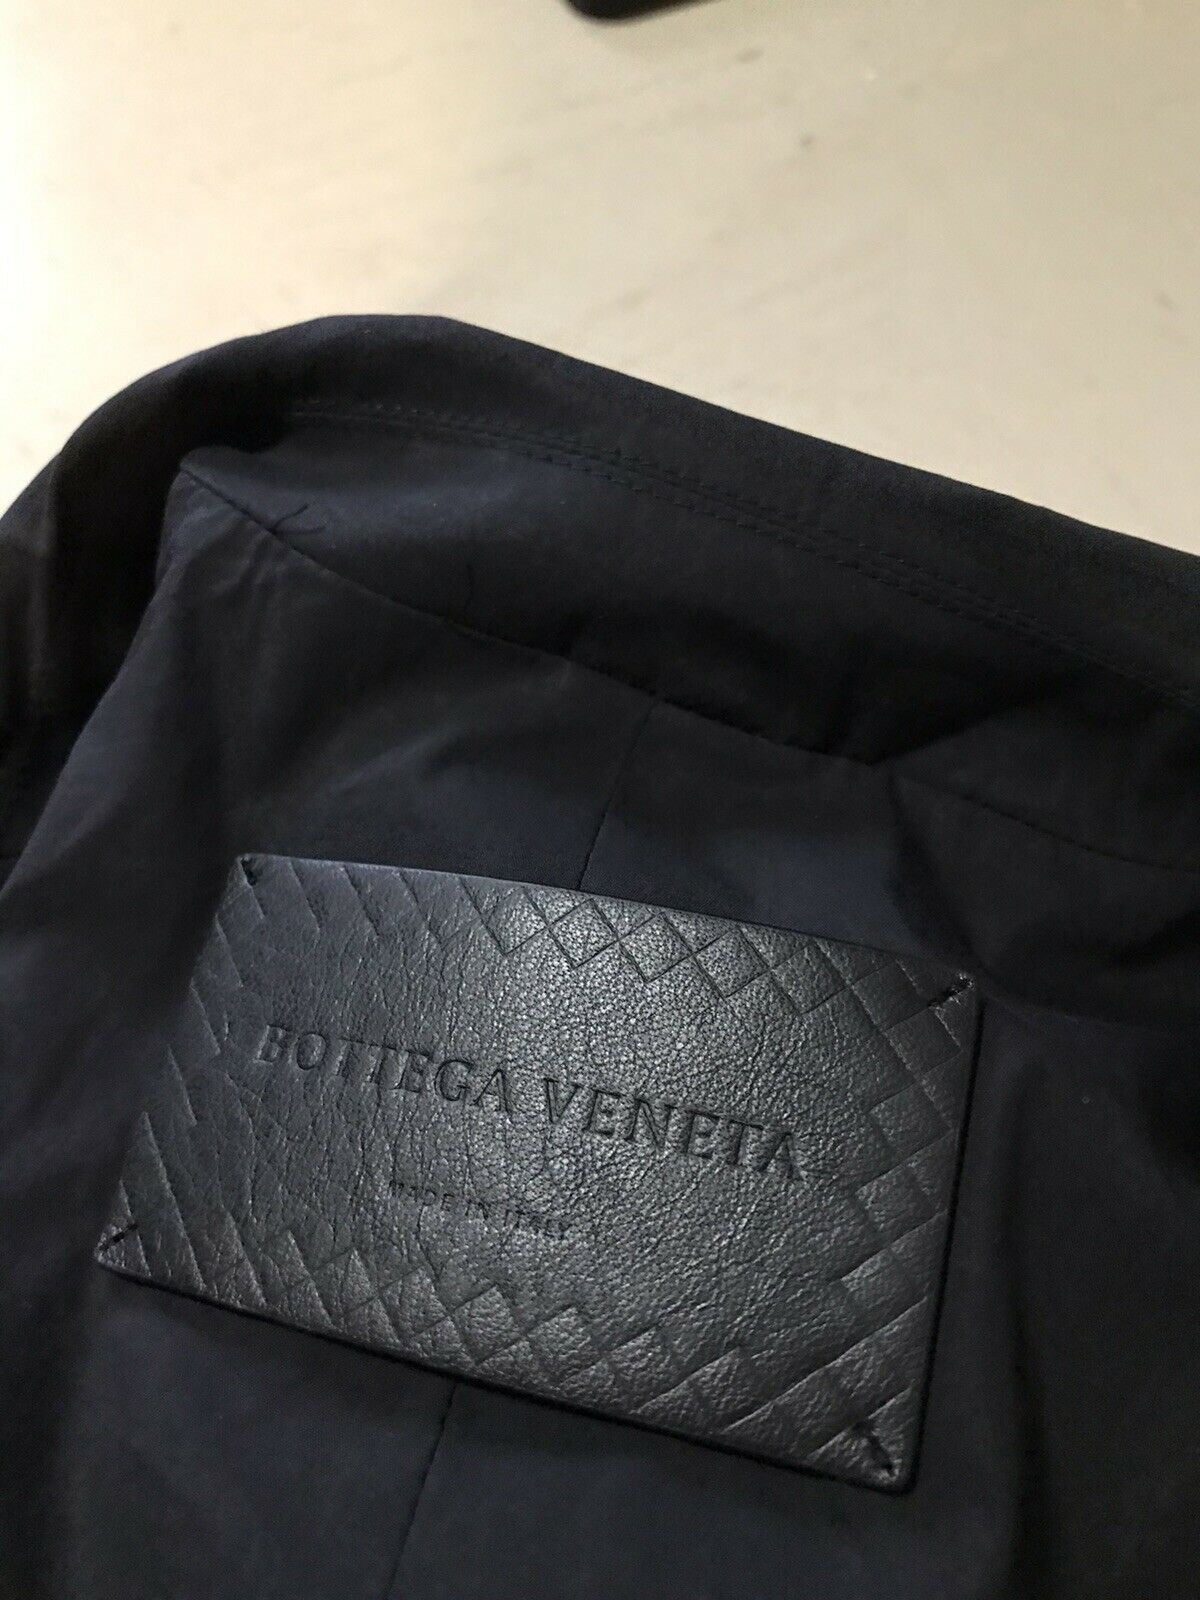 Neu $ 1300 Bottega Veneta Herrenjacke Blazer Schwarz 38 US (48 Eu) Italien